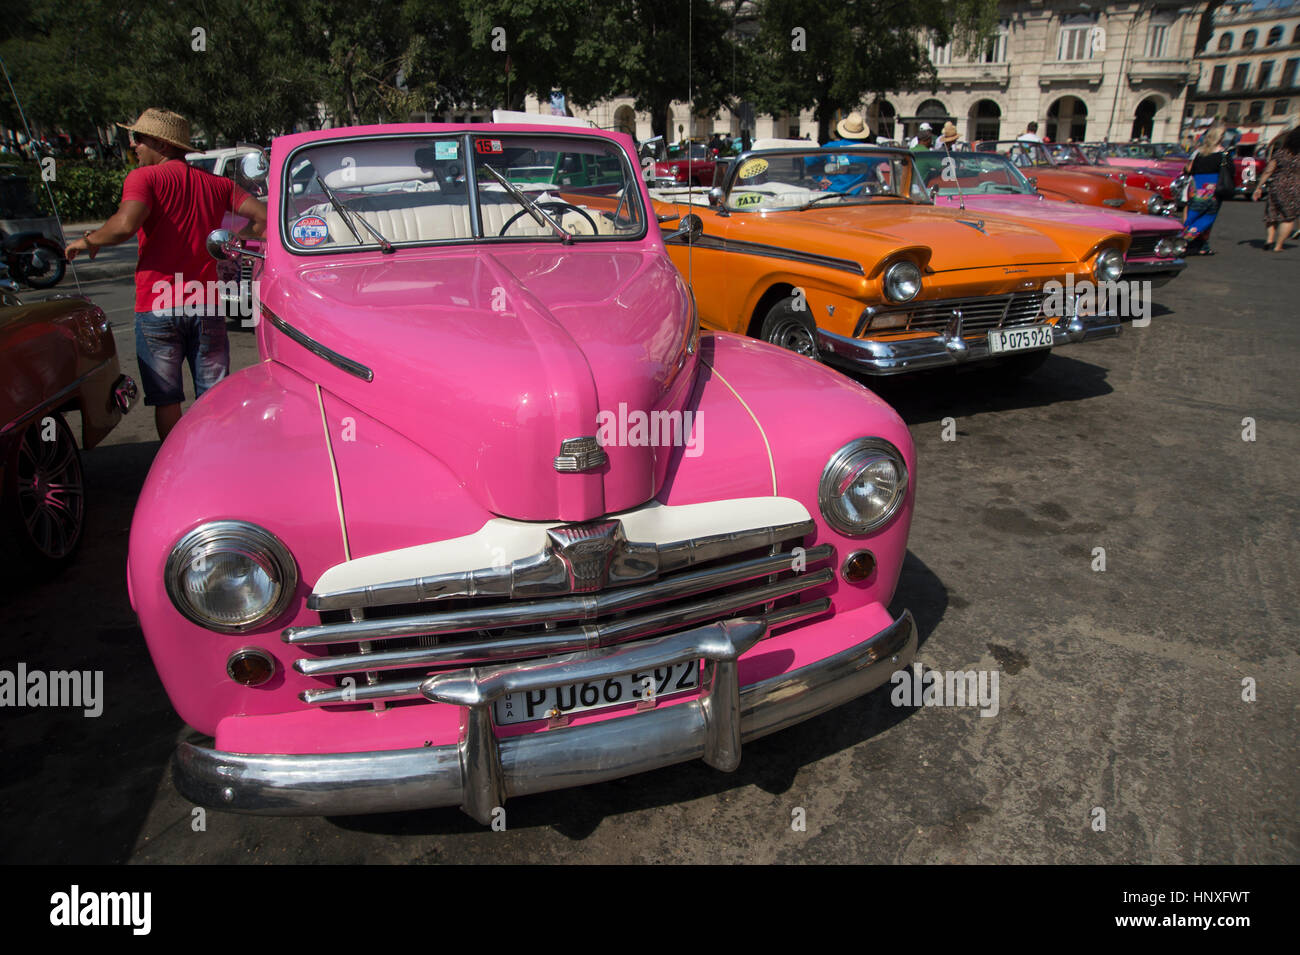 Entièrement restauré, peint de couleurs vives, de l'Amérique des années 50 voitures garées ensemble dans Centro Havana Cuba Banque D'Images